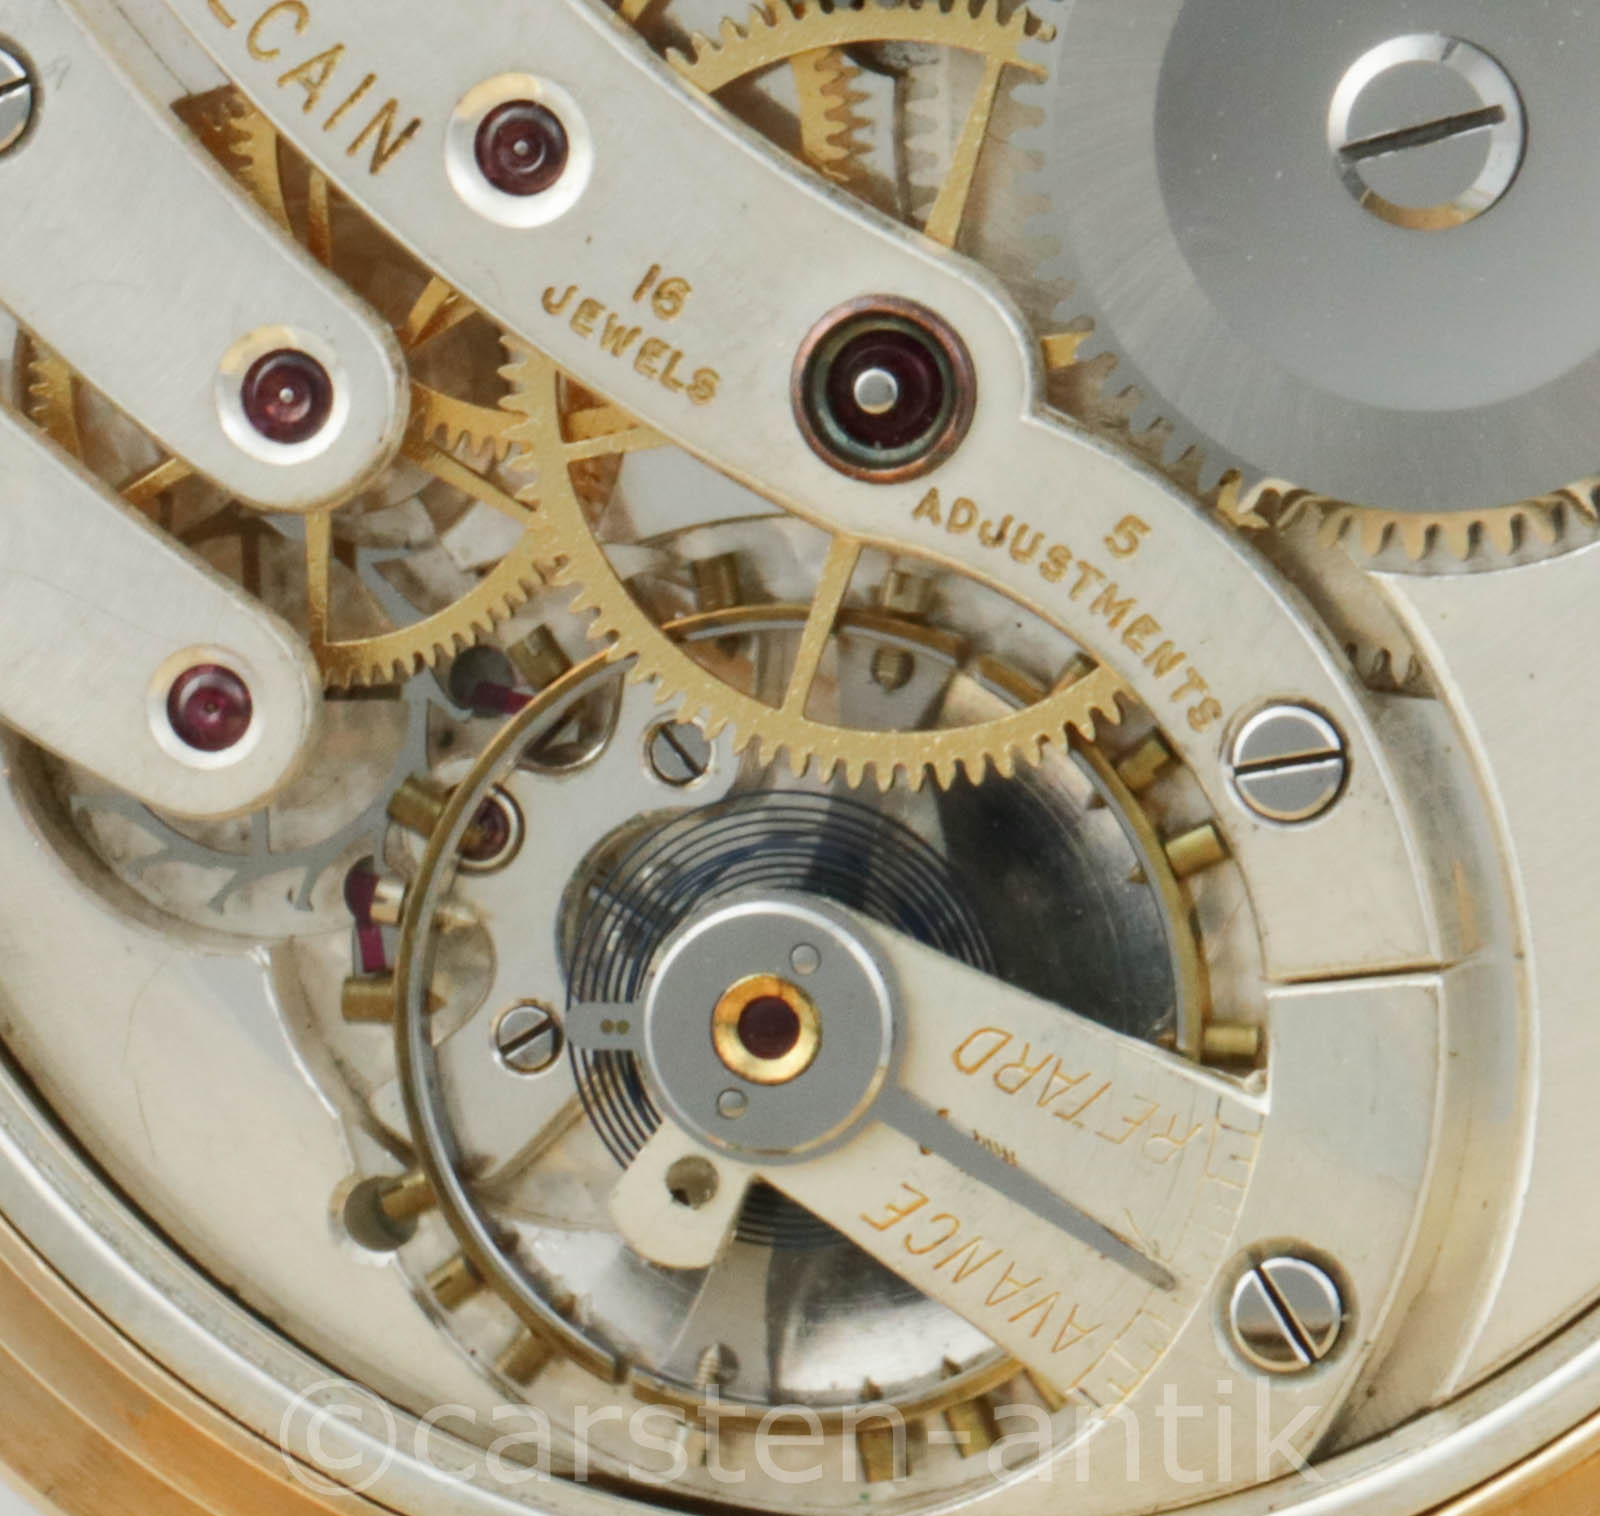 Ditisheim Co 18k Gold Savonnette Chronometre Vulcain Original Box Ebay